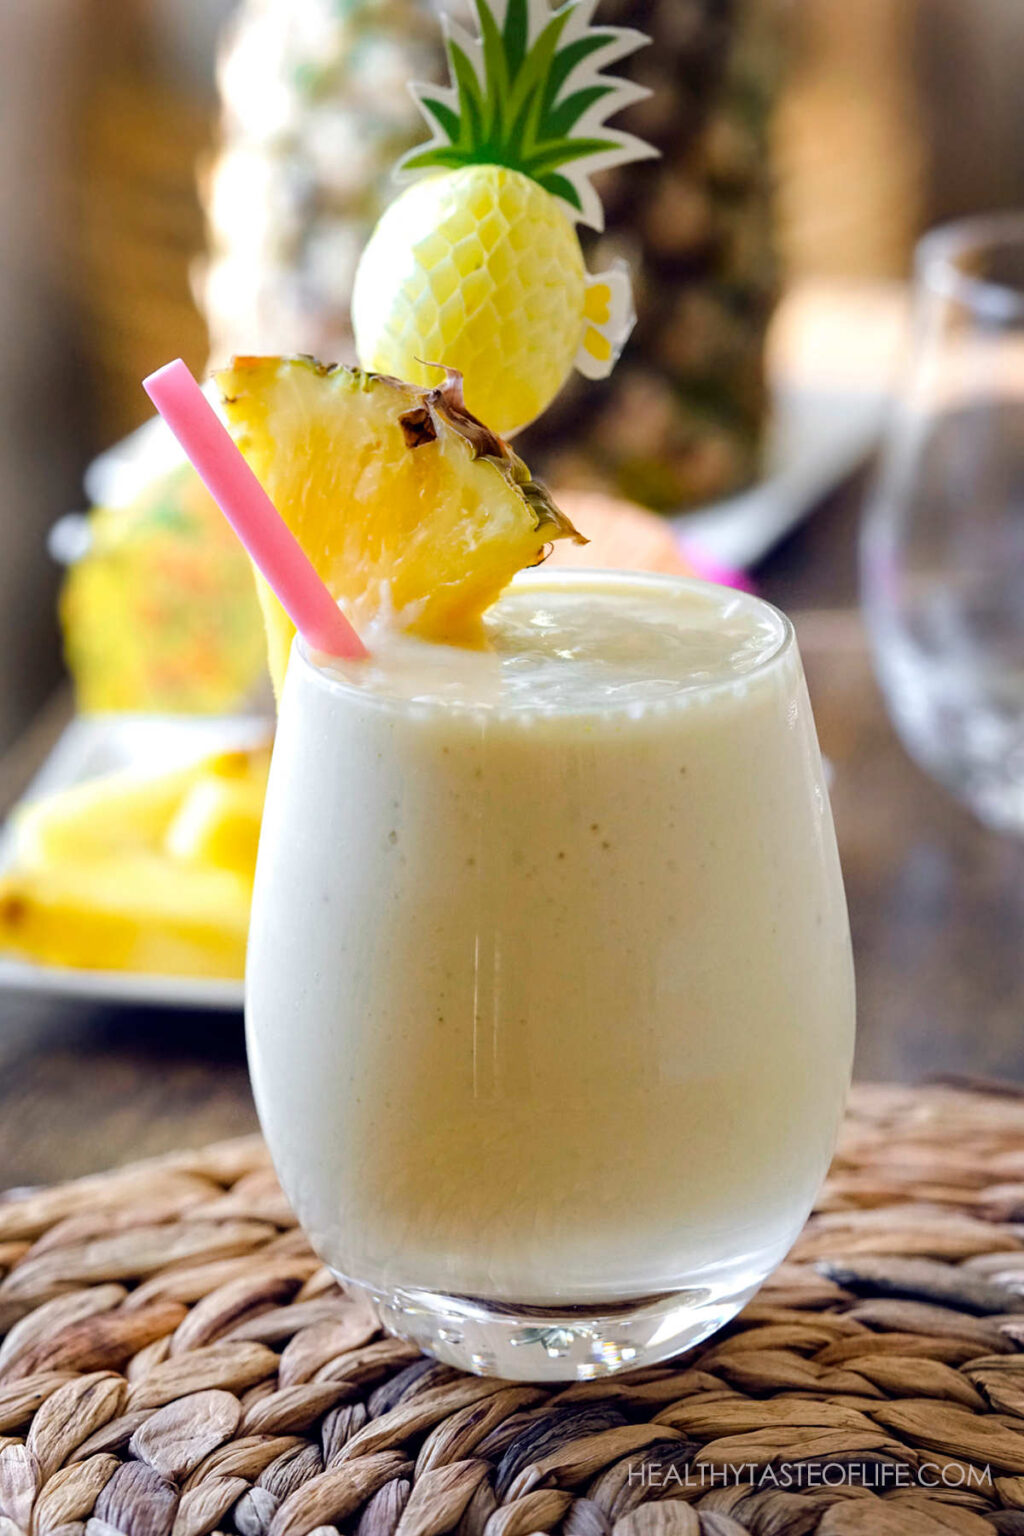 Pineapple Milkshake With Coconut Video DF Version Healthy Taste Of Life